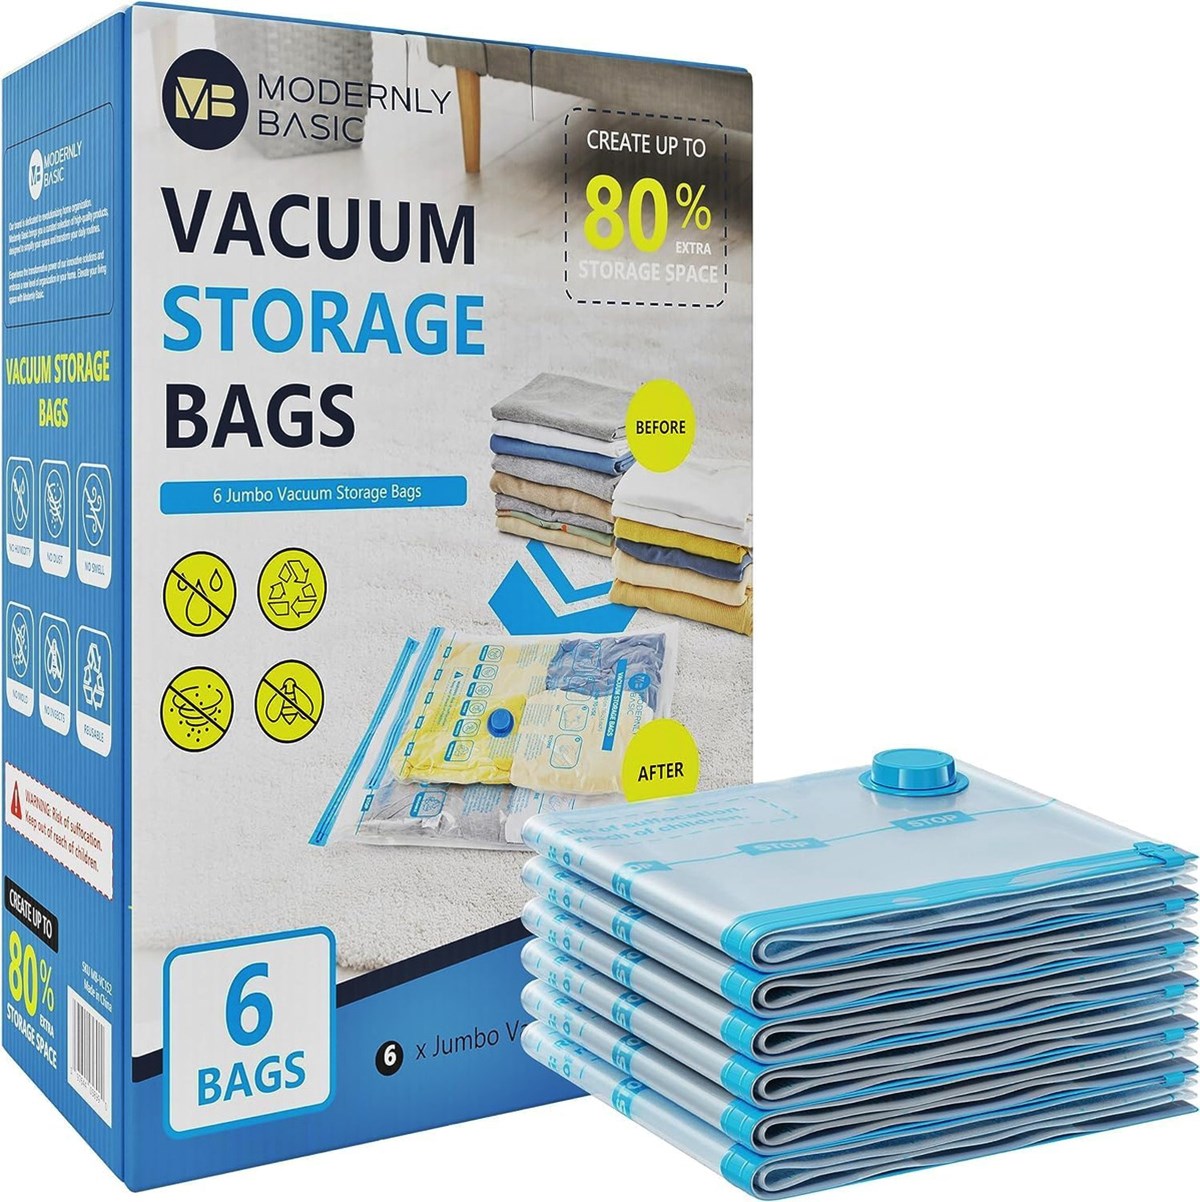 Spacemore Premium Reusable Vacuum Storage Bags & Reviews